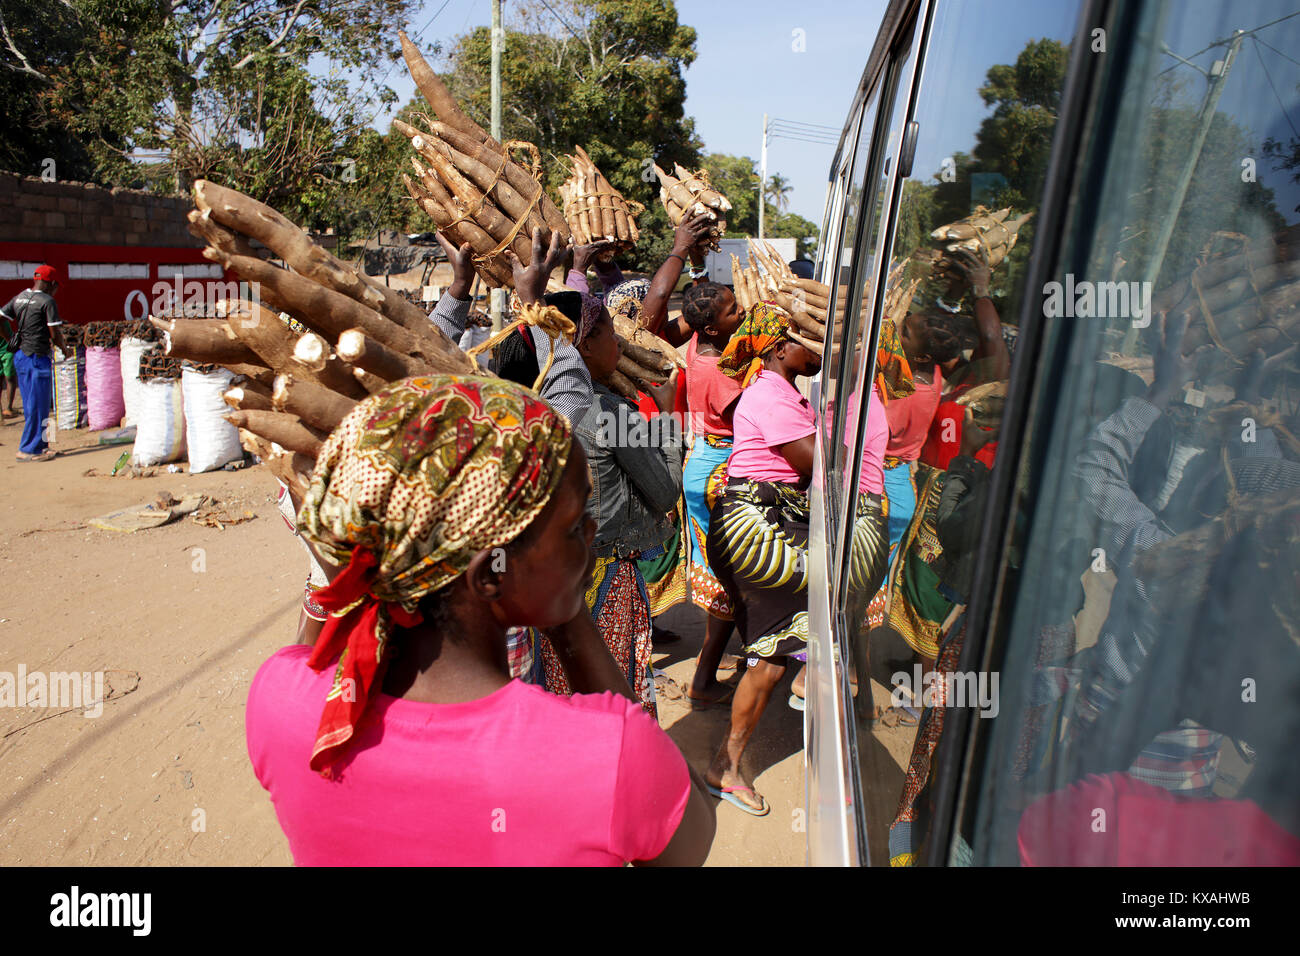 Les femmes vendent des paquets de racines pour les gens qui attendent dans un autobus qui passe par la ville d'Afrique, Mozambique Banque D'Images